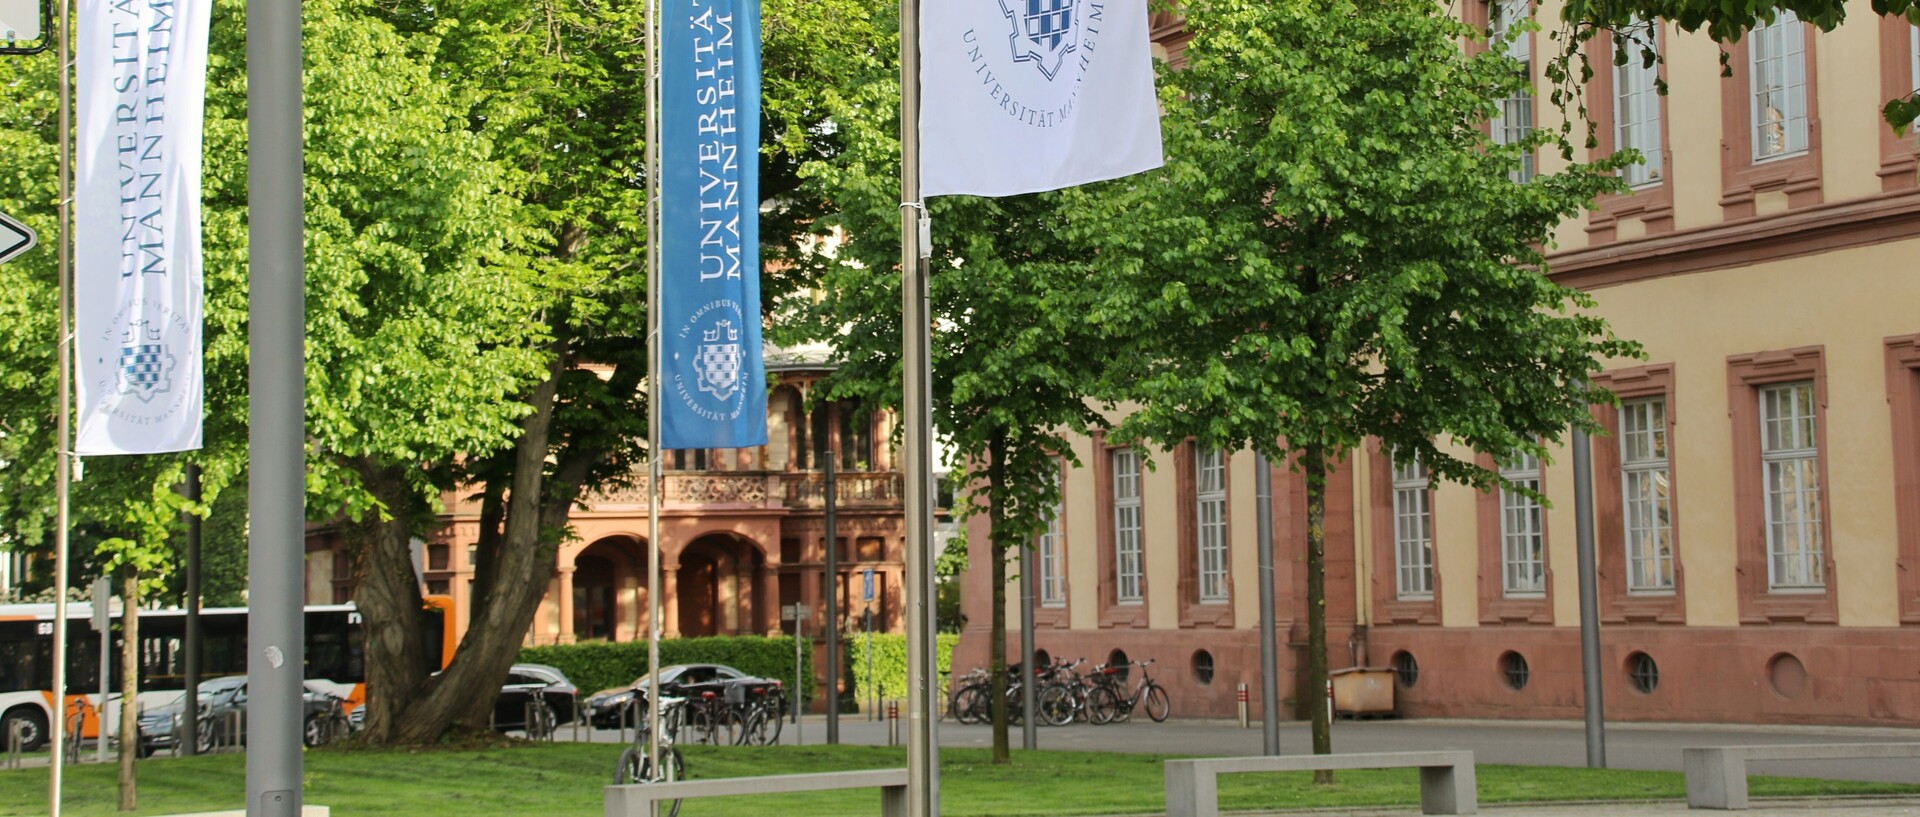 Fahnen der Universität vor dem Ostflügel des Schlosses